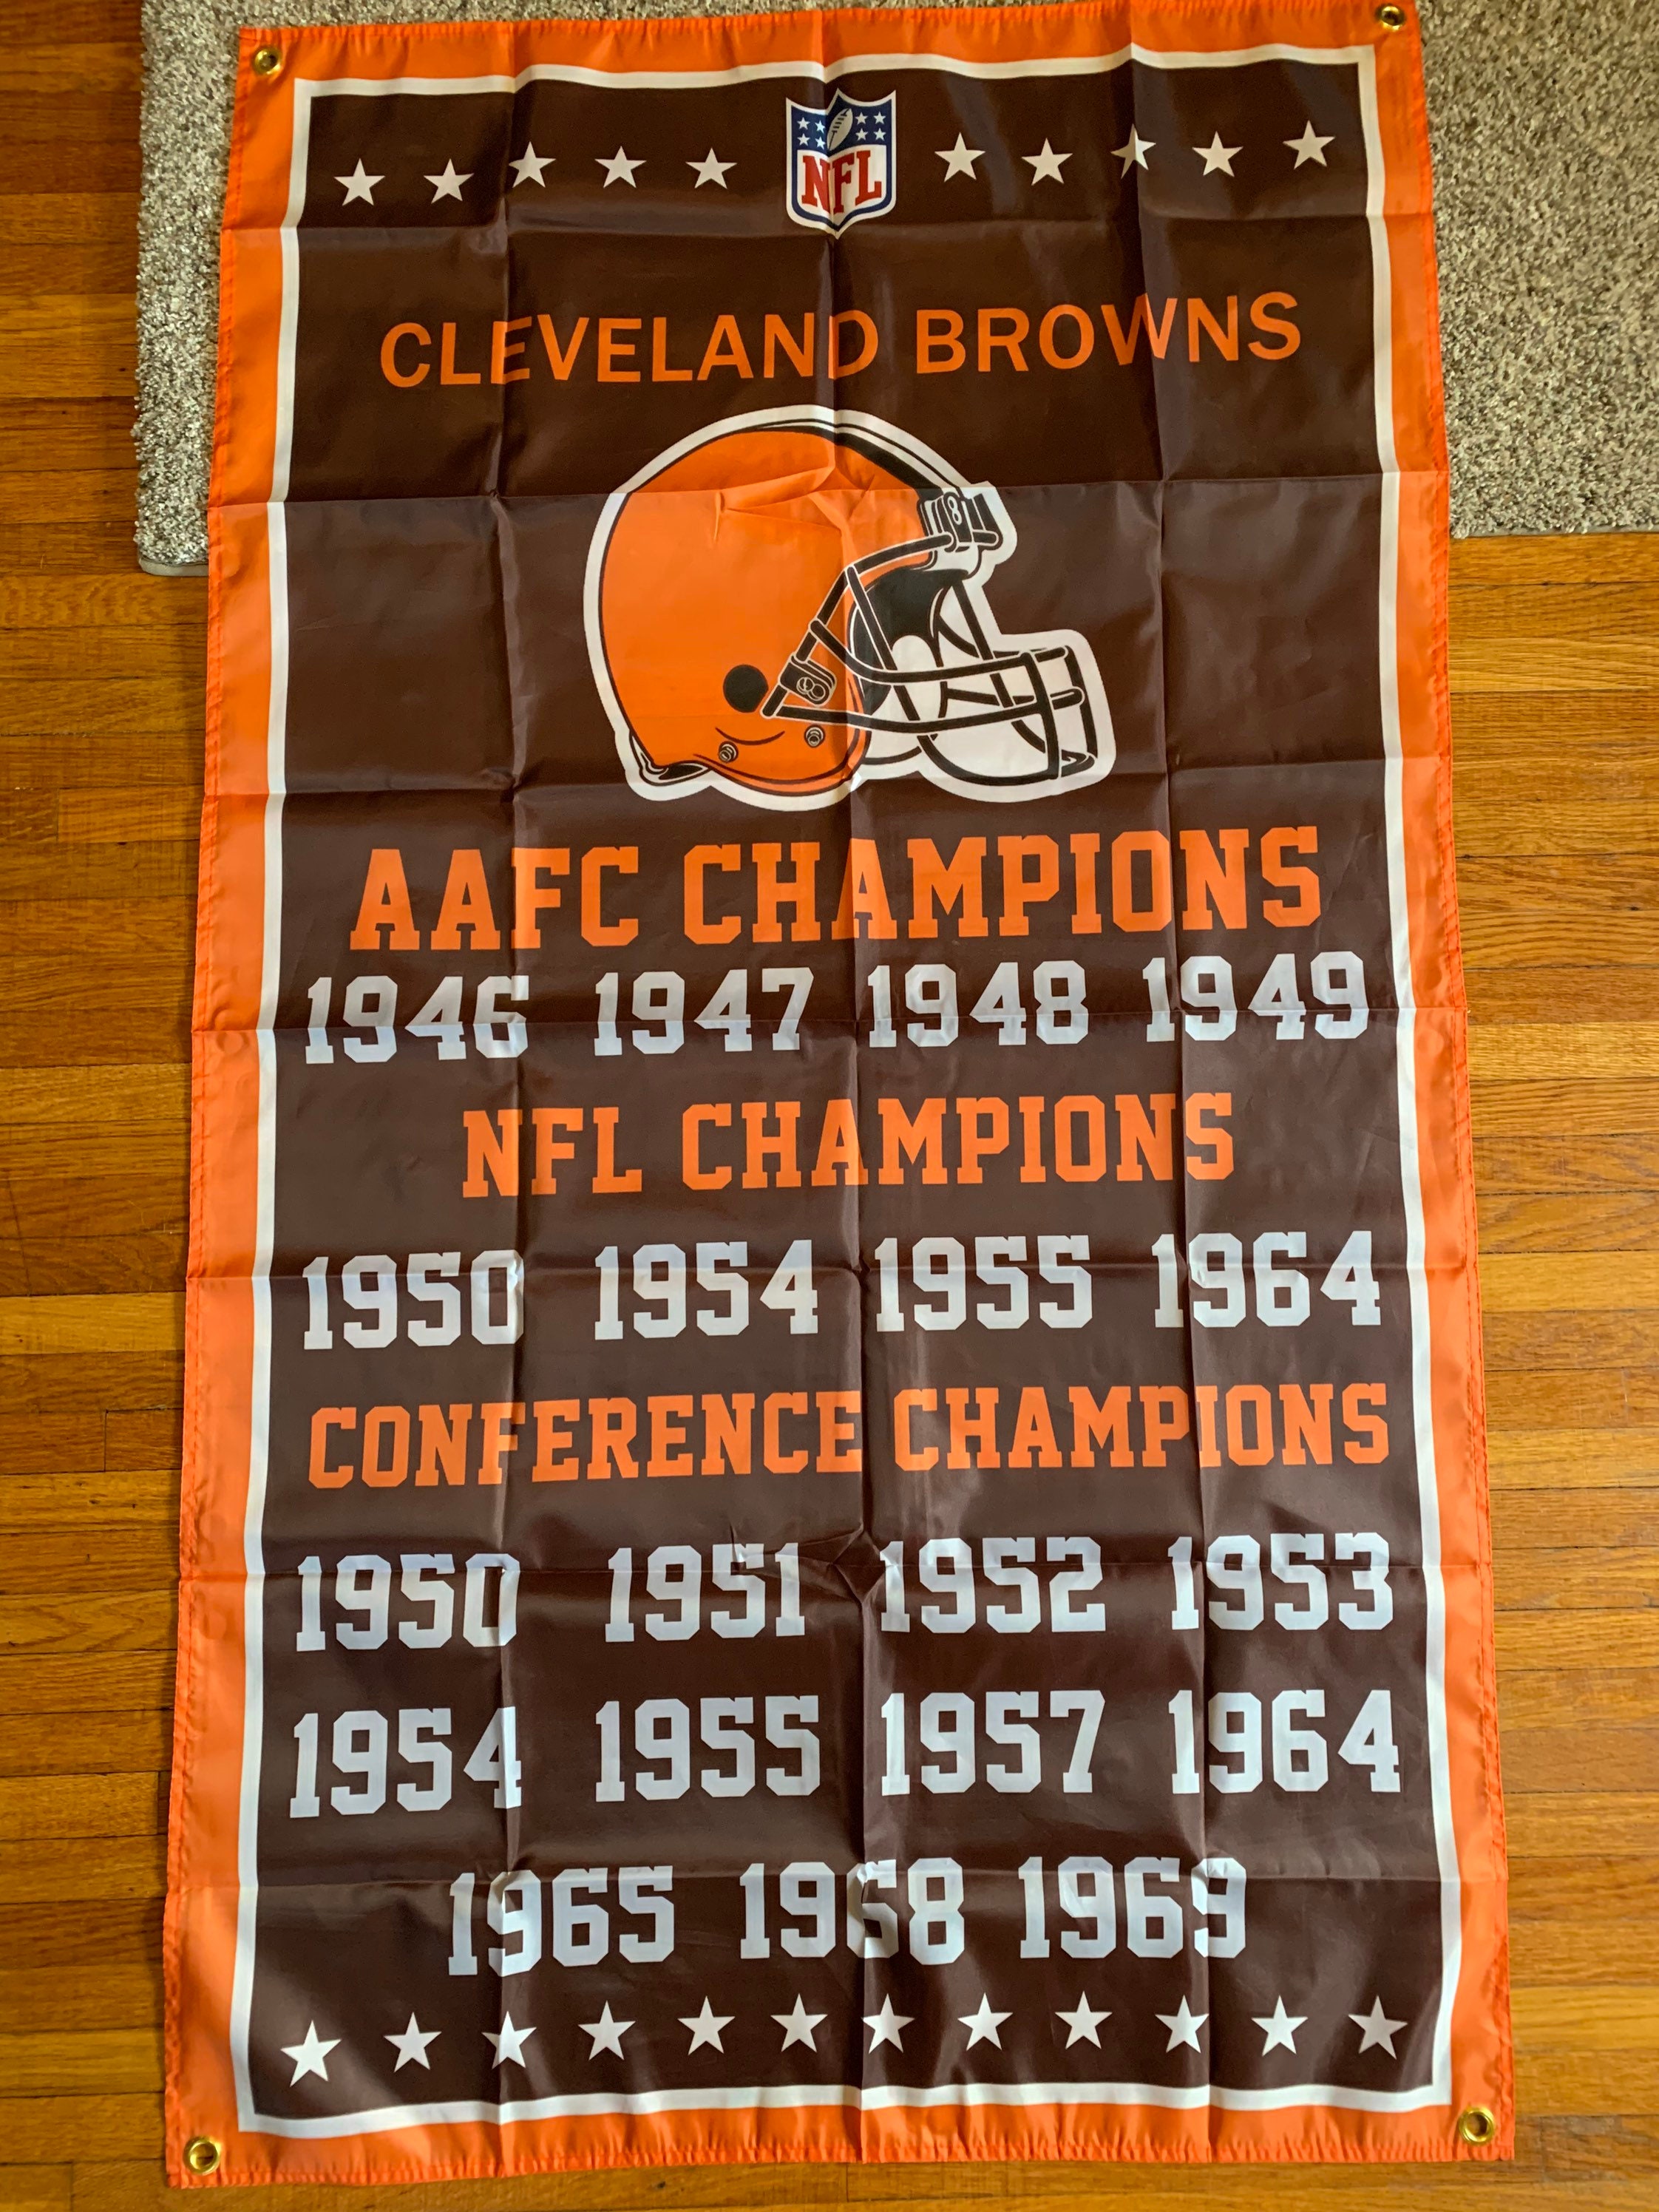 NFL - Cleveland Browns Car Flag